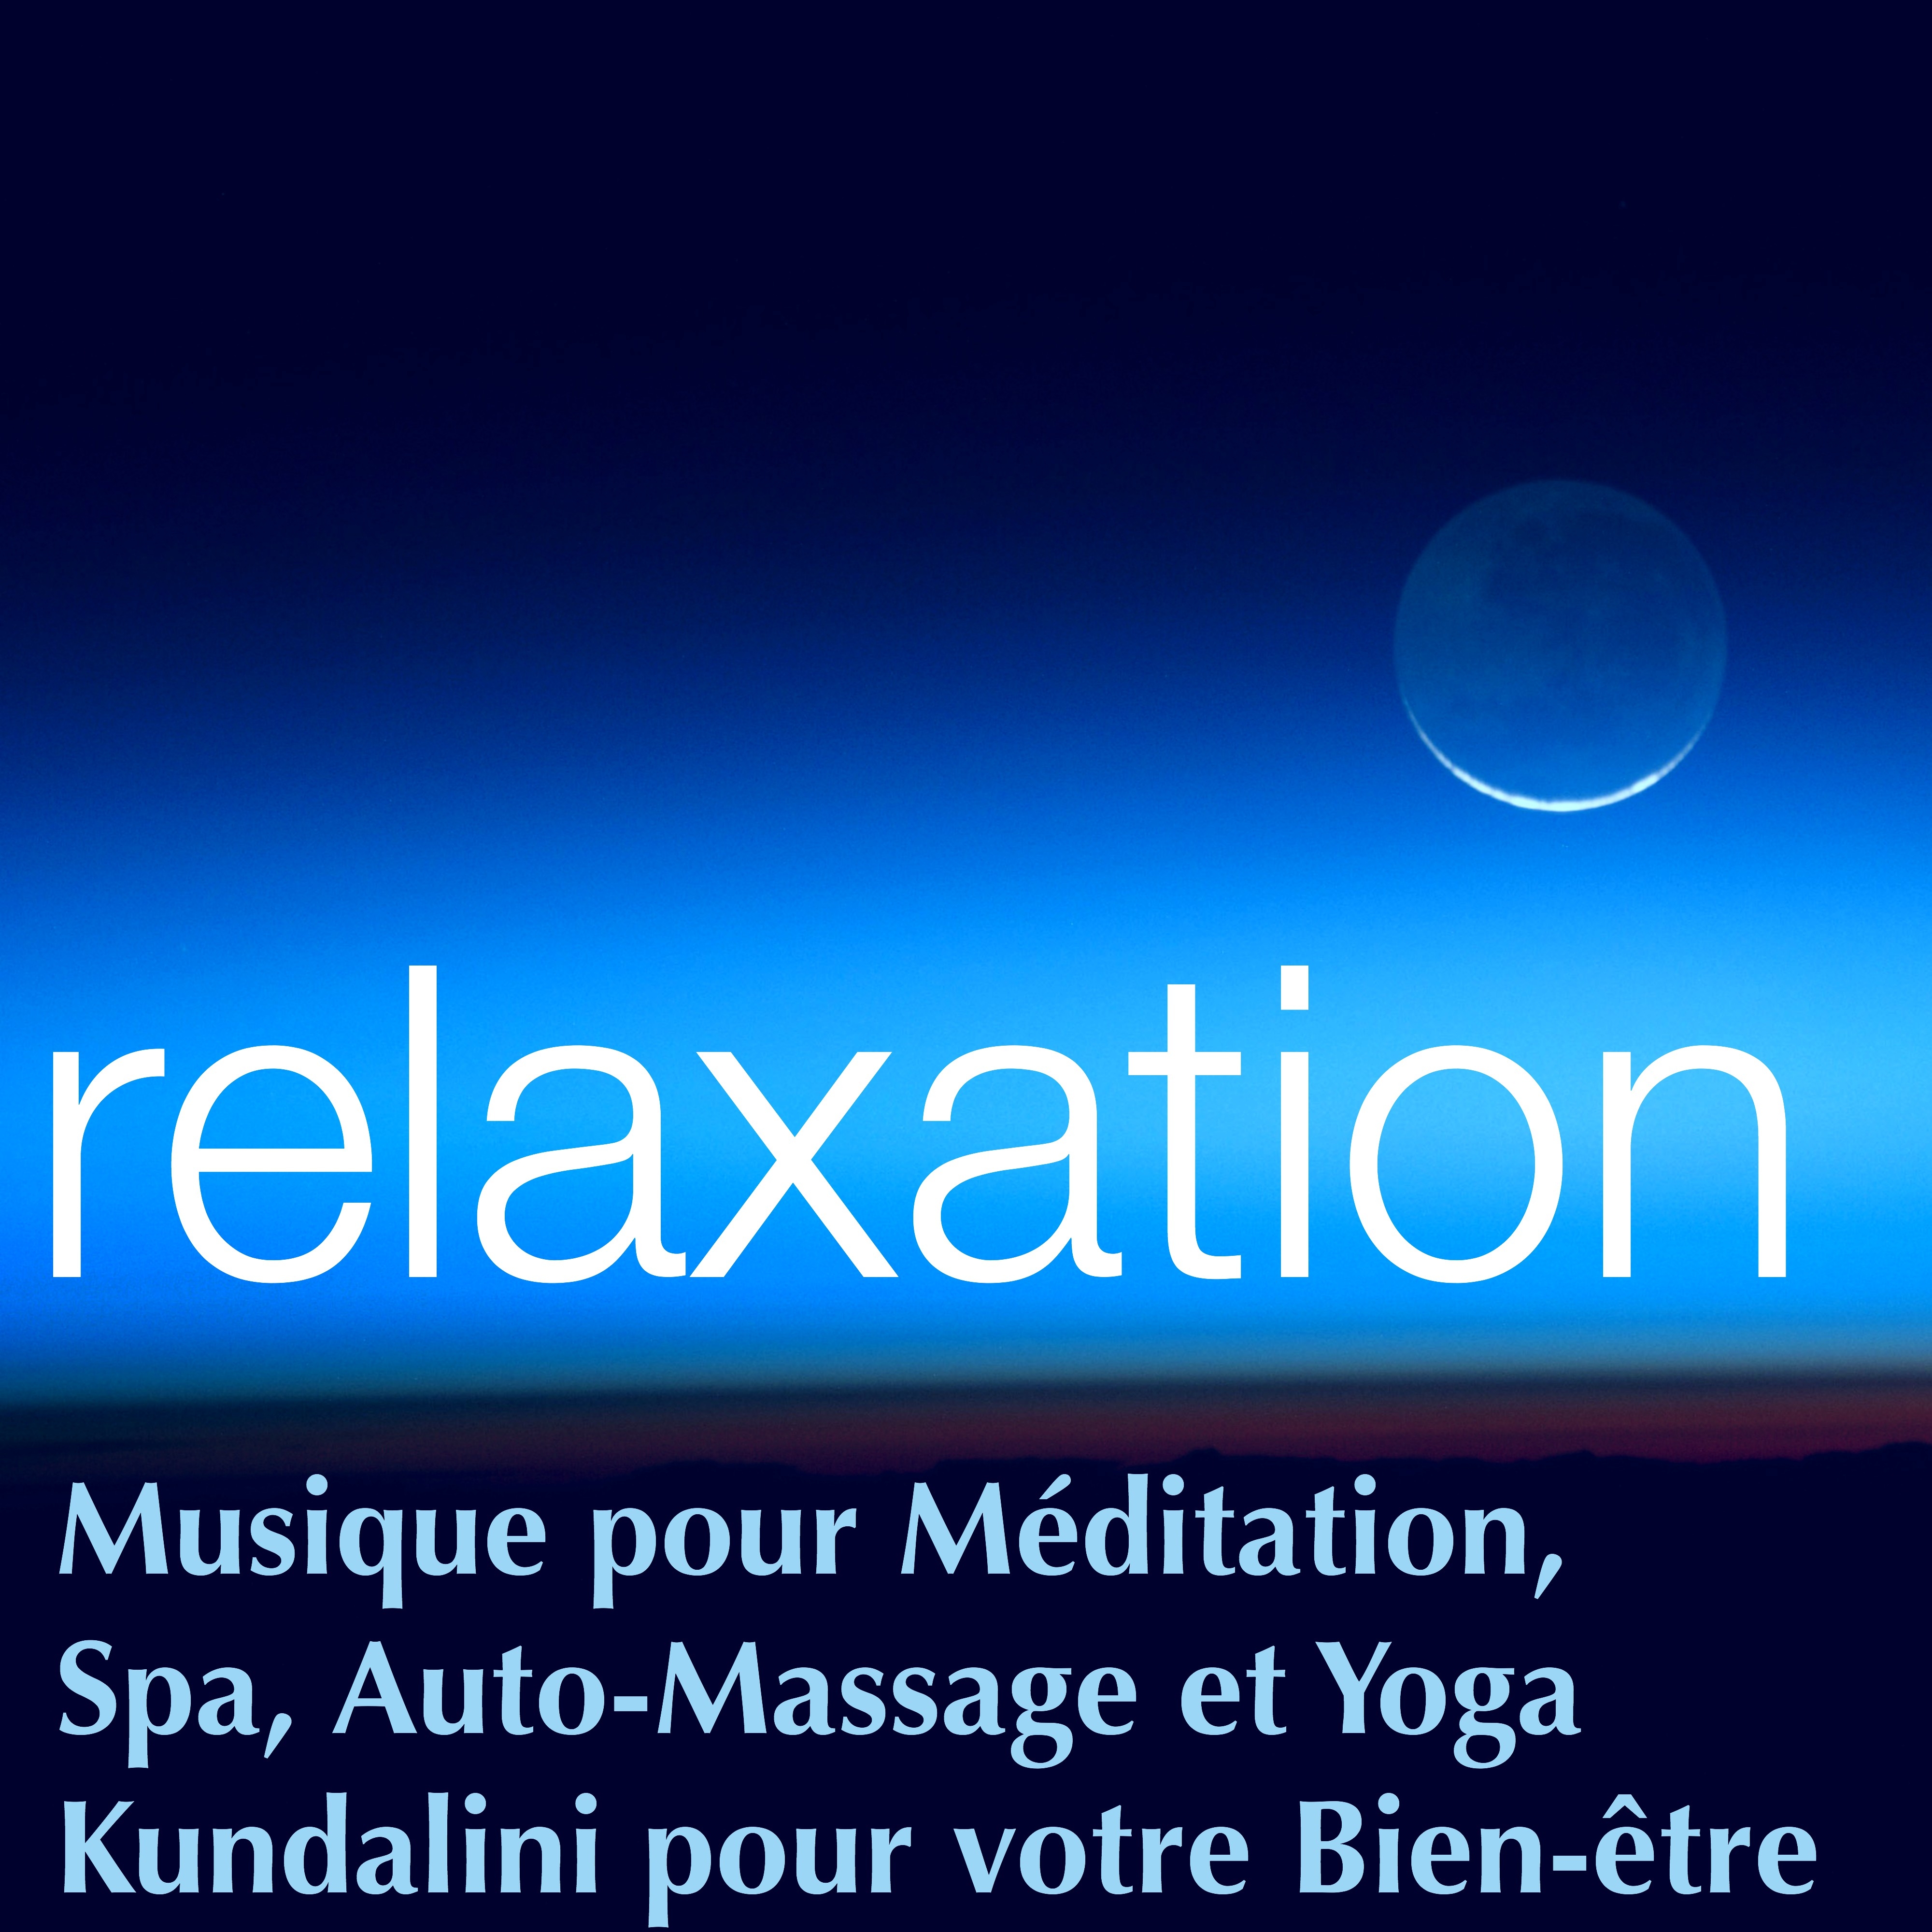 Relaxation – Musique pour Méditation, Spa, Auto-Massage et Yoga Kundalini pour votre Bien-être